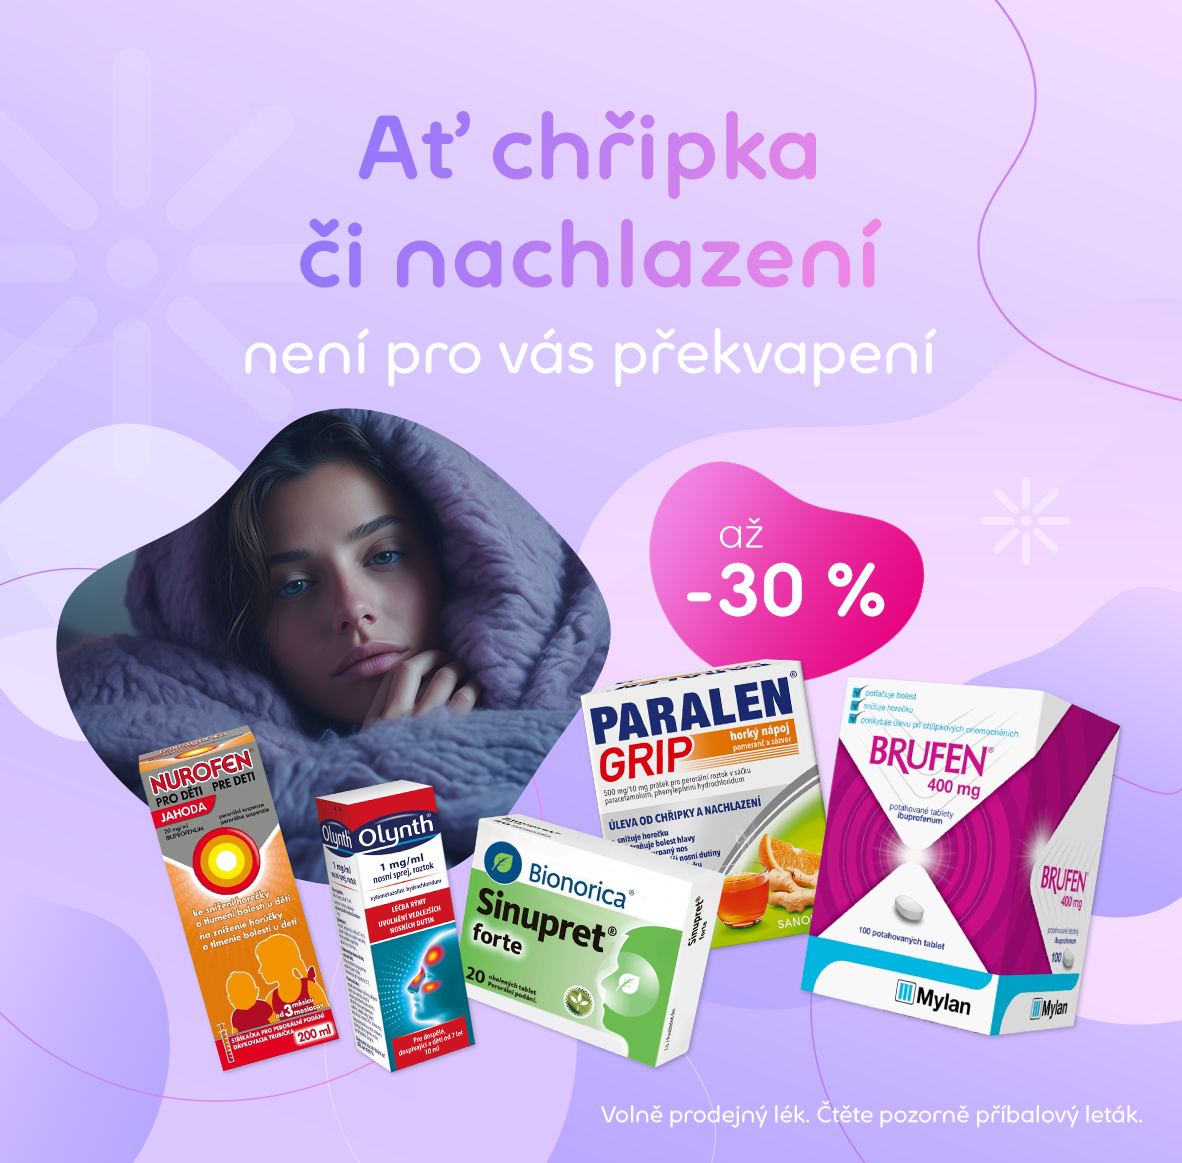 Chřipka a nachlazení | Pilulka.cz